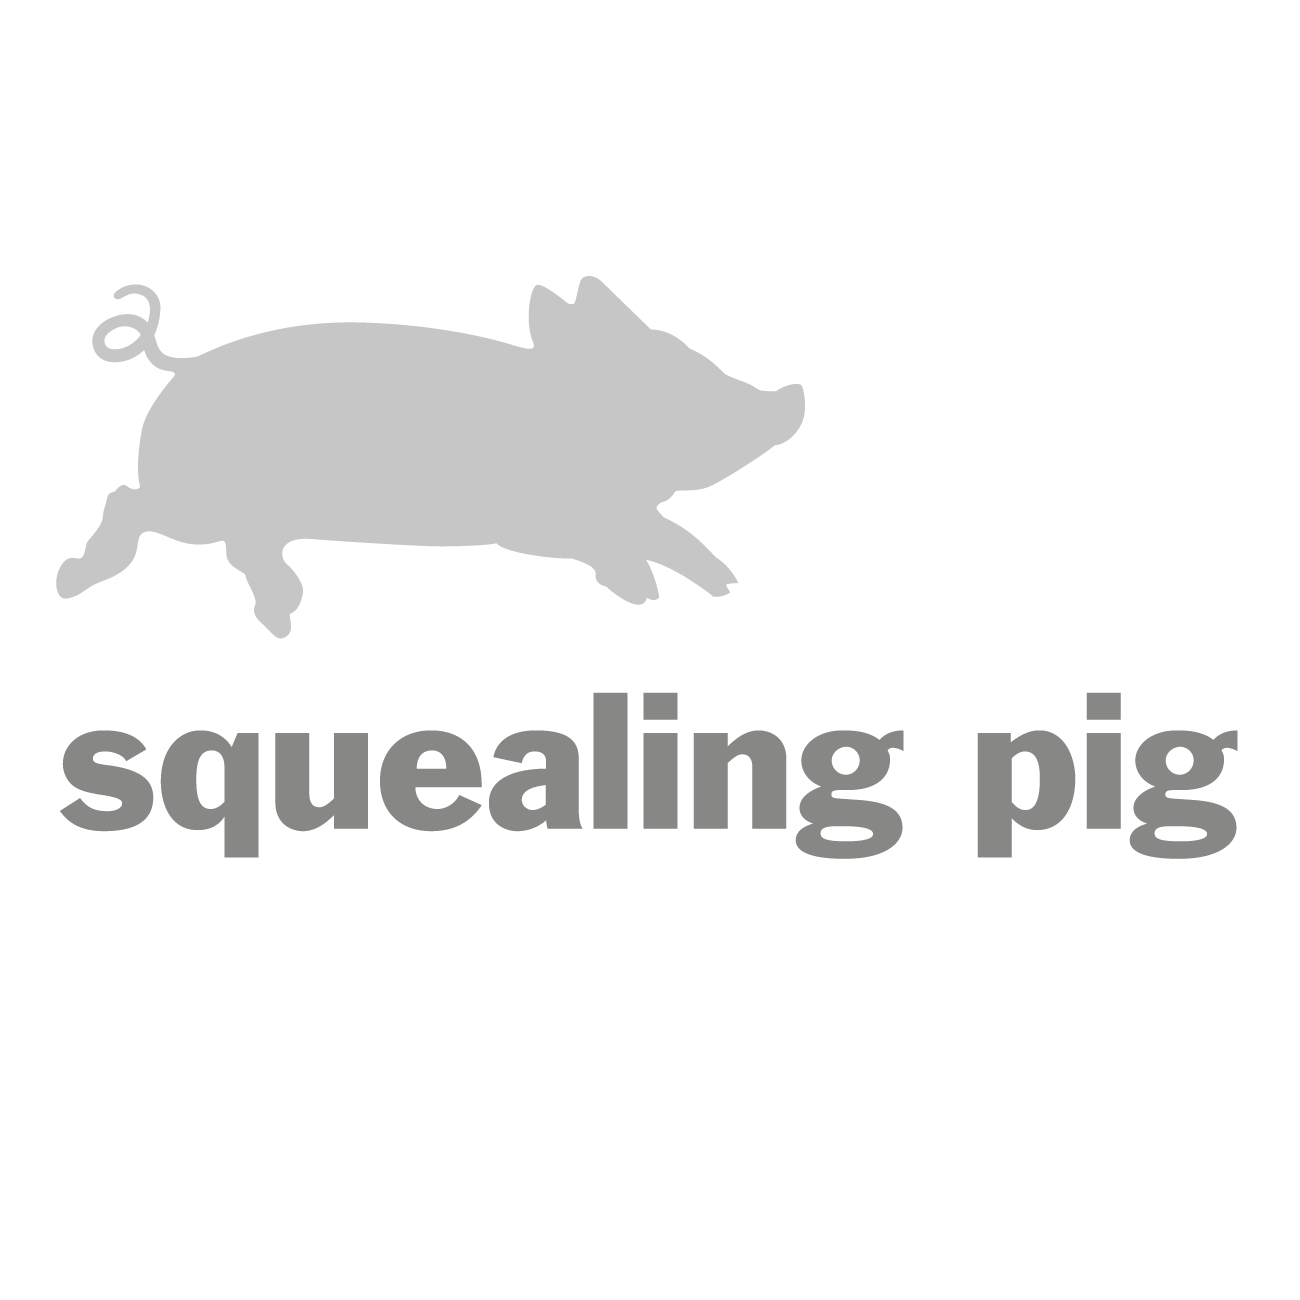 Squealing Pig logo